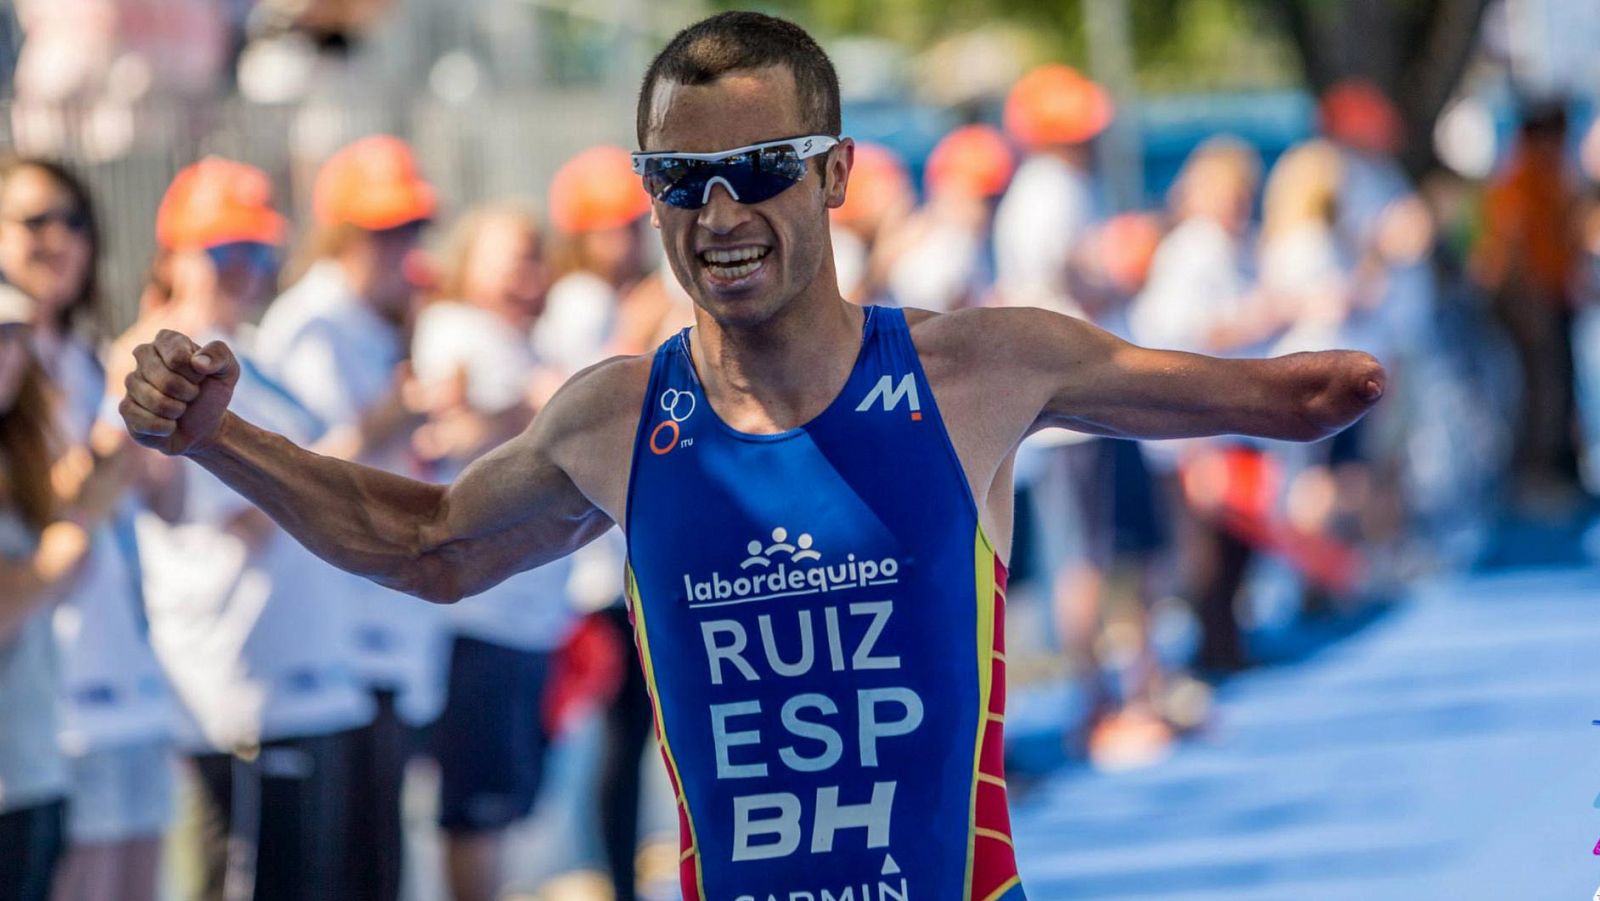 El triatleta Jairo Ruiz logra el bronce en Río